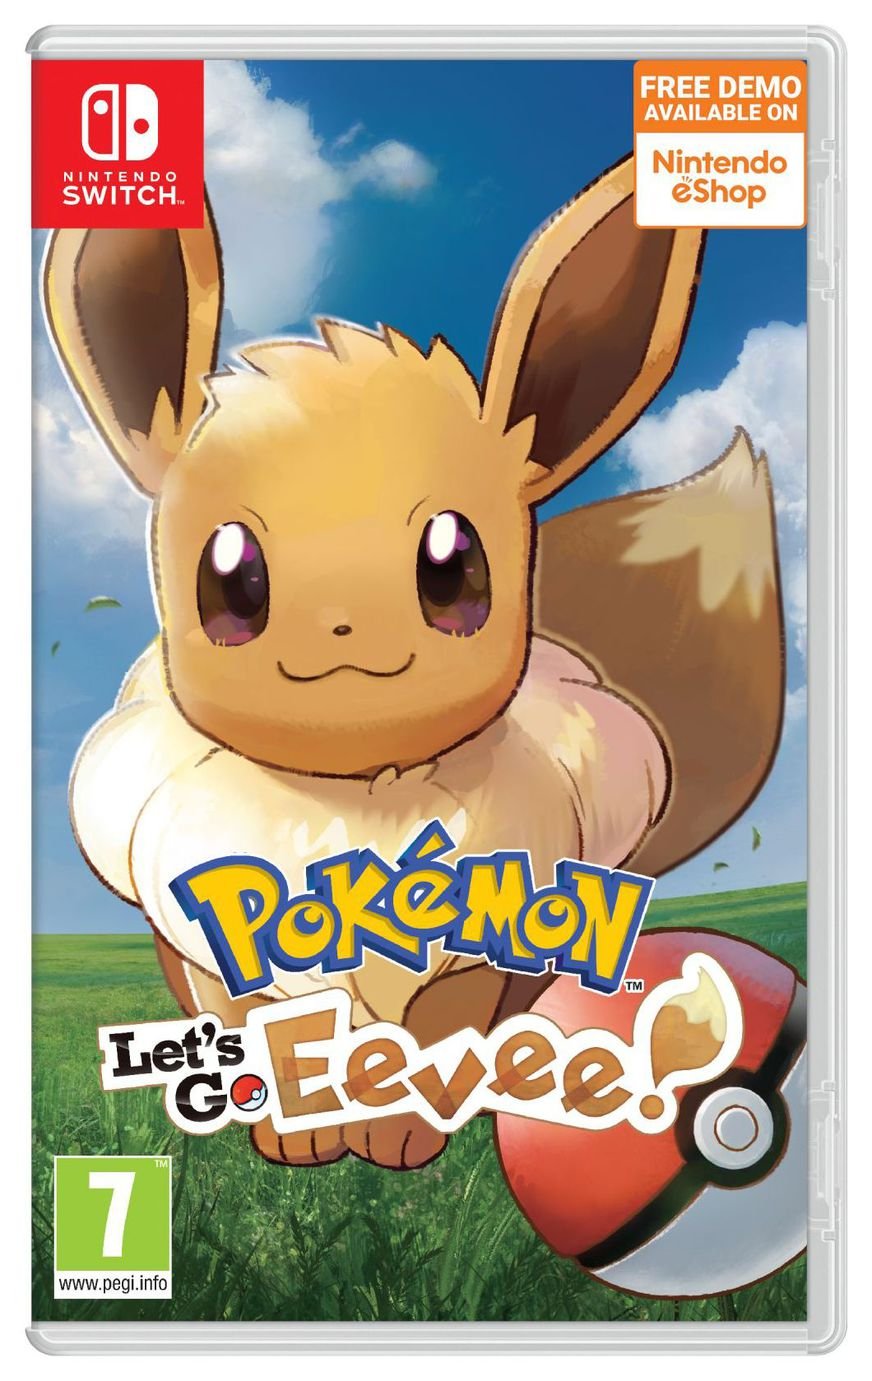 Pokemon: Let's Go Eevee! Nintendo Switch Game